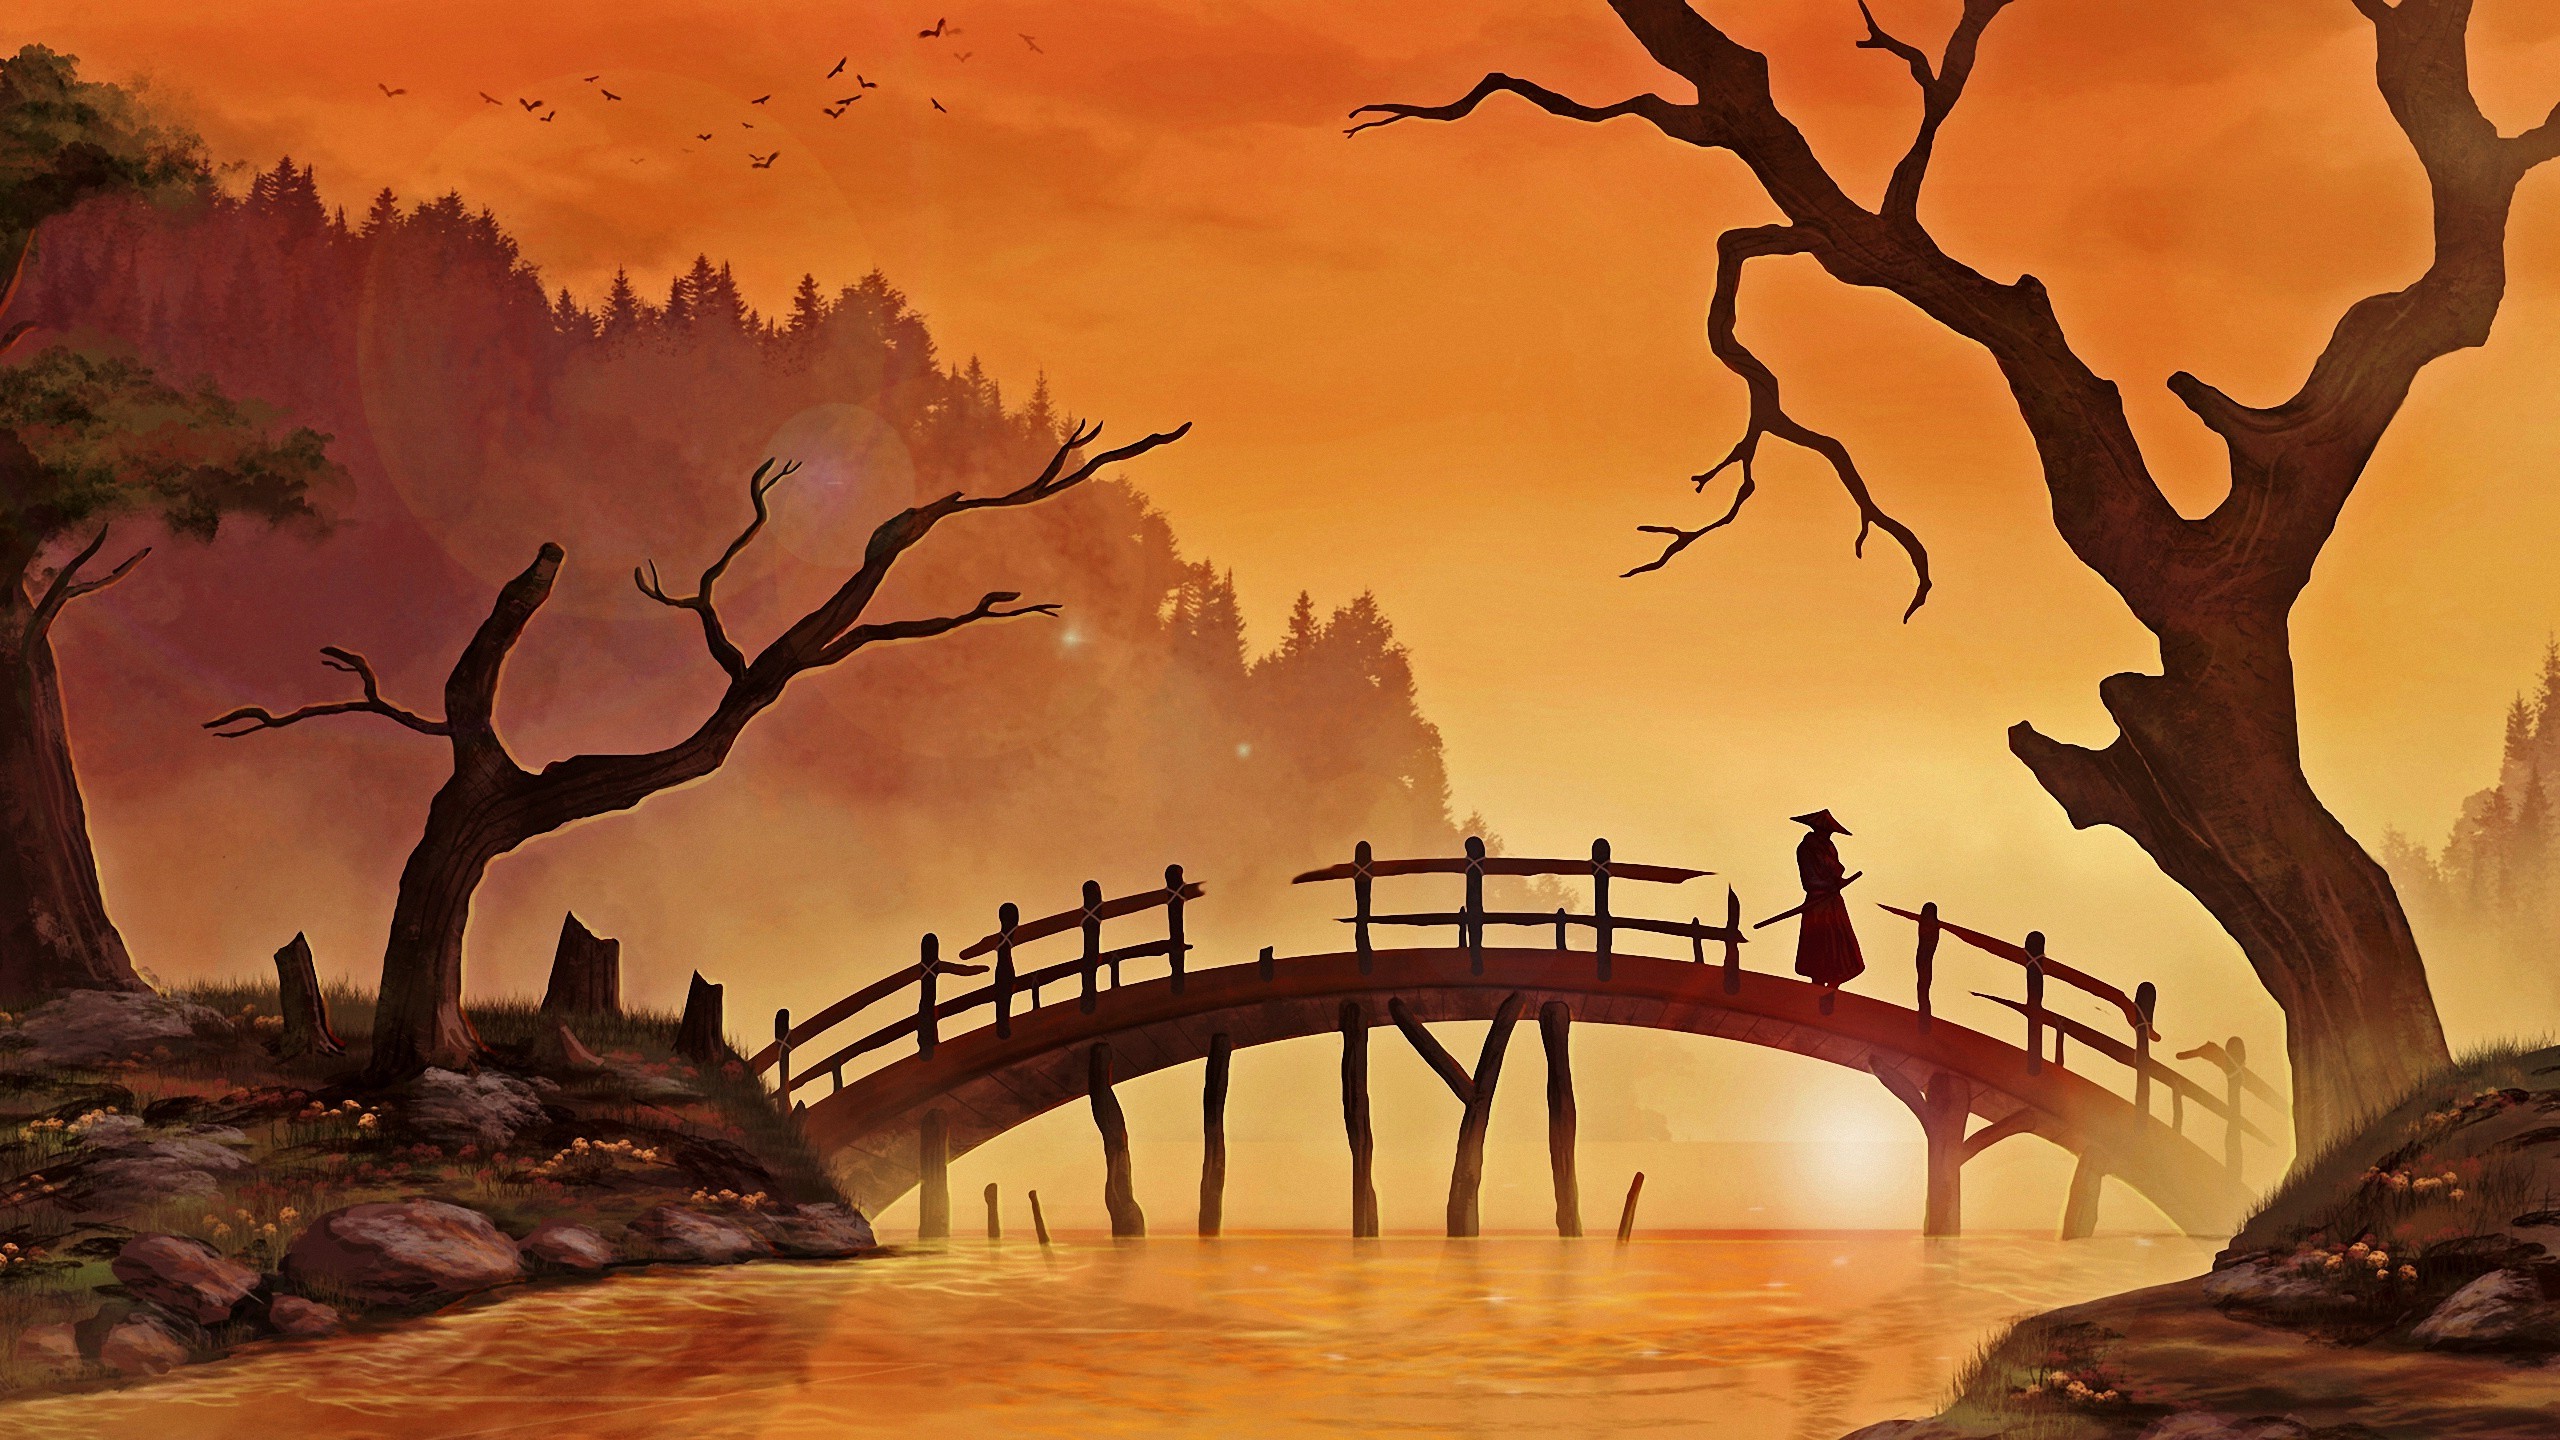 japanese art wallpaper,nature,watercolor paint,bridge,natural landscape,arch bridge